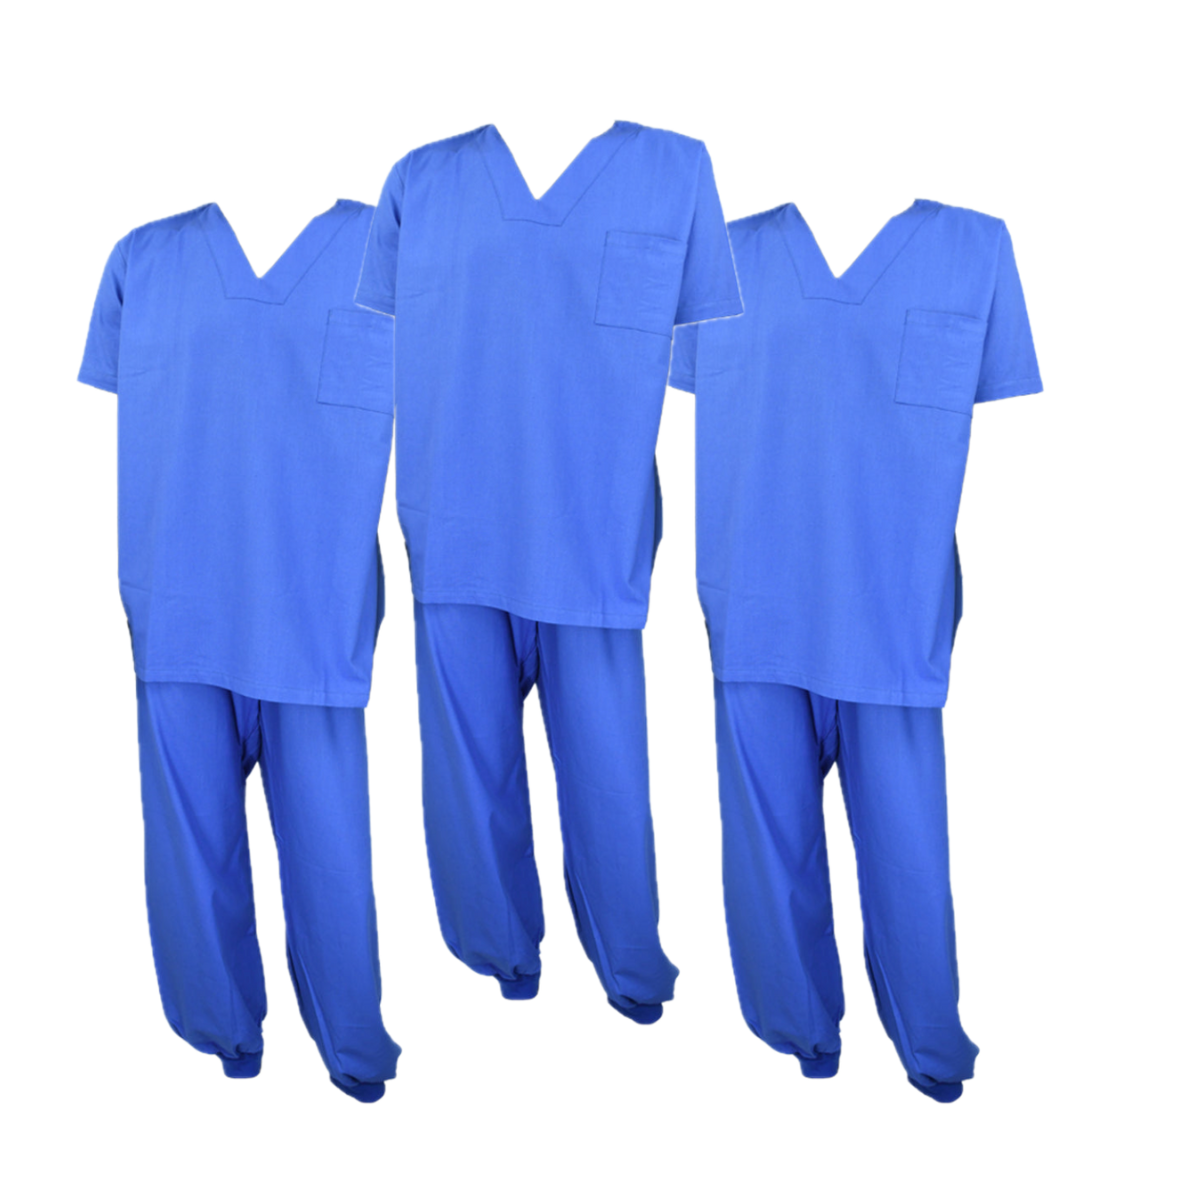 Paquete de 3 Uniformes Quirúrgicos Azules - ADIS